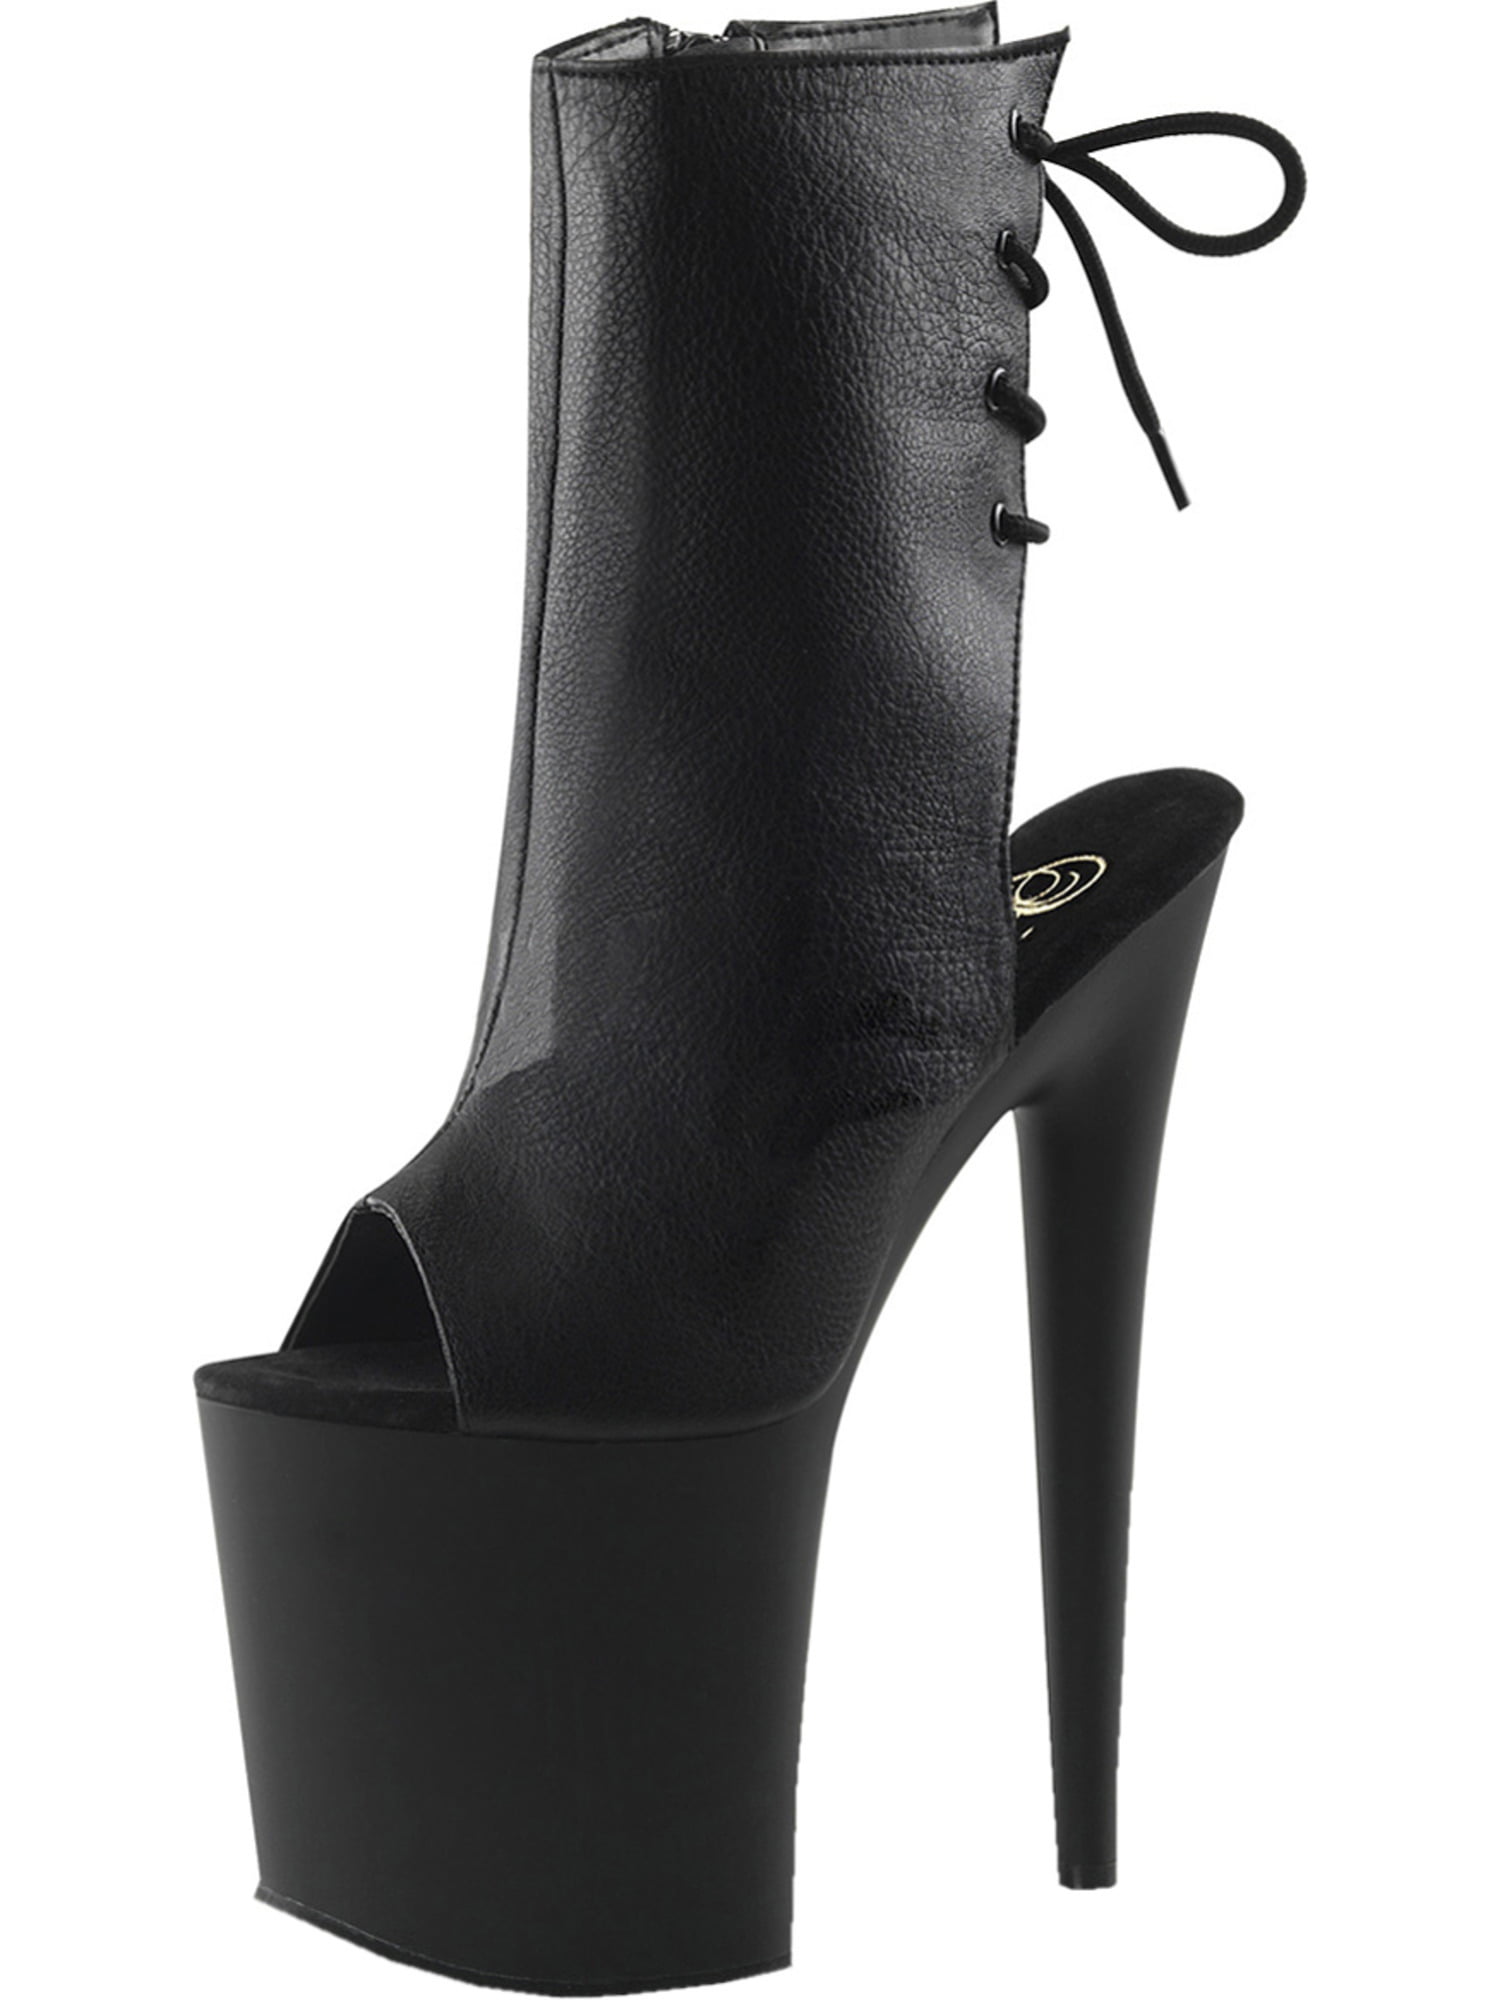 heels 8 inch